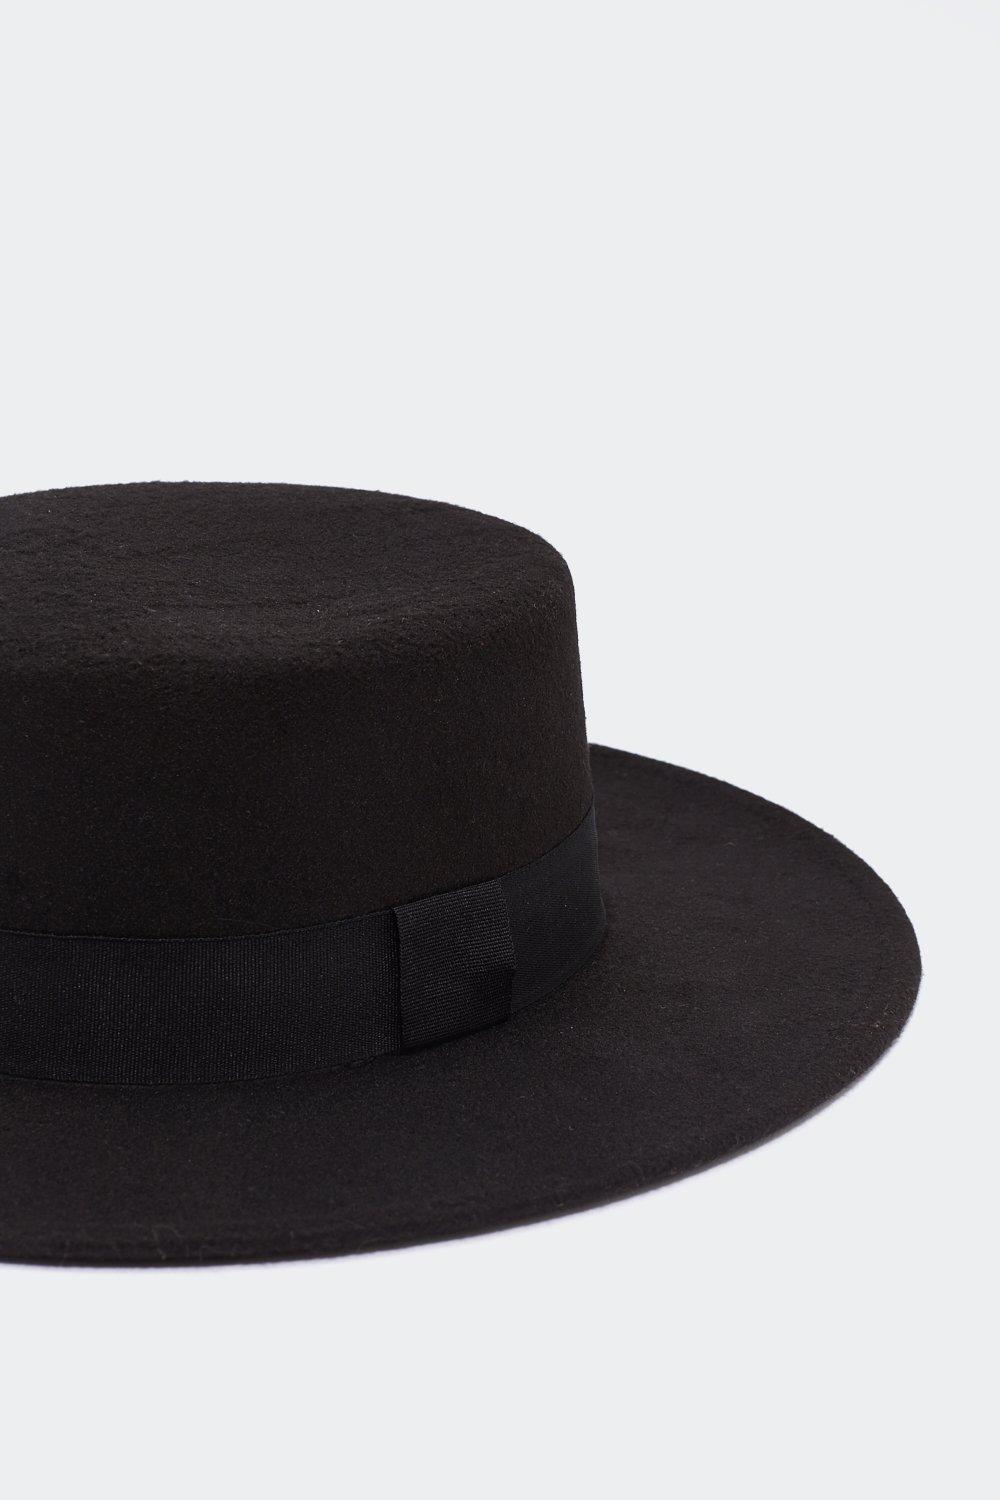 Flat Top Wide Brim Hat